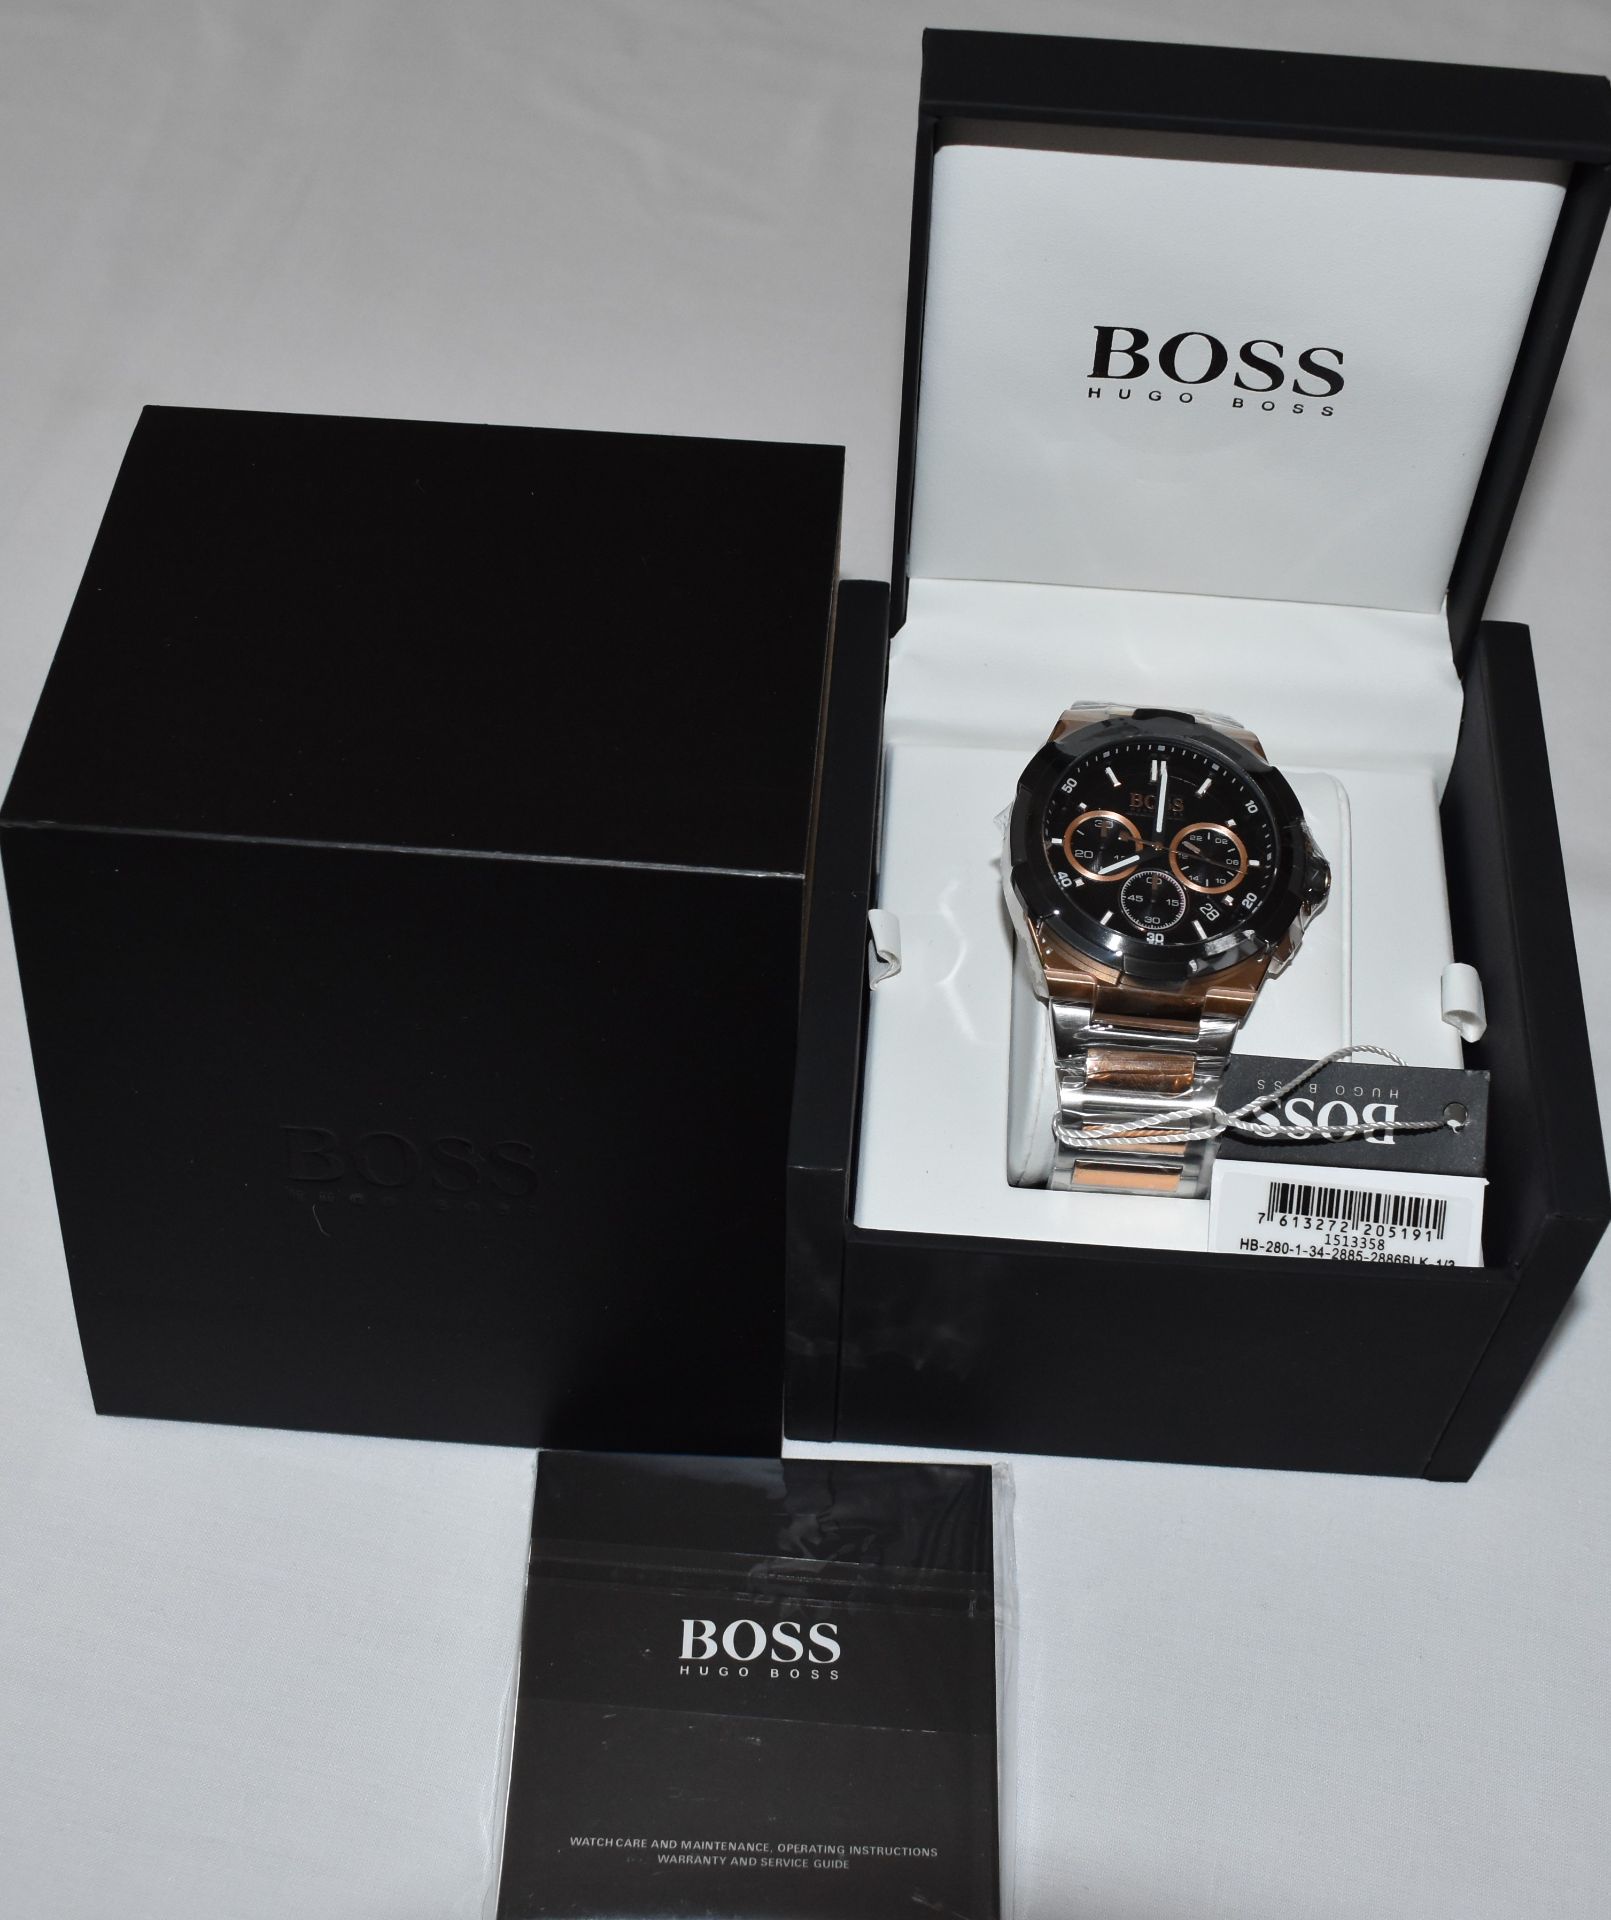 Hugo Boss Men's Watch 1513358 - Image 2 of 2